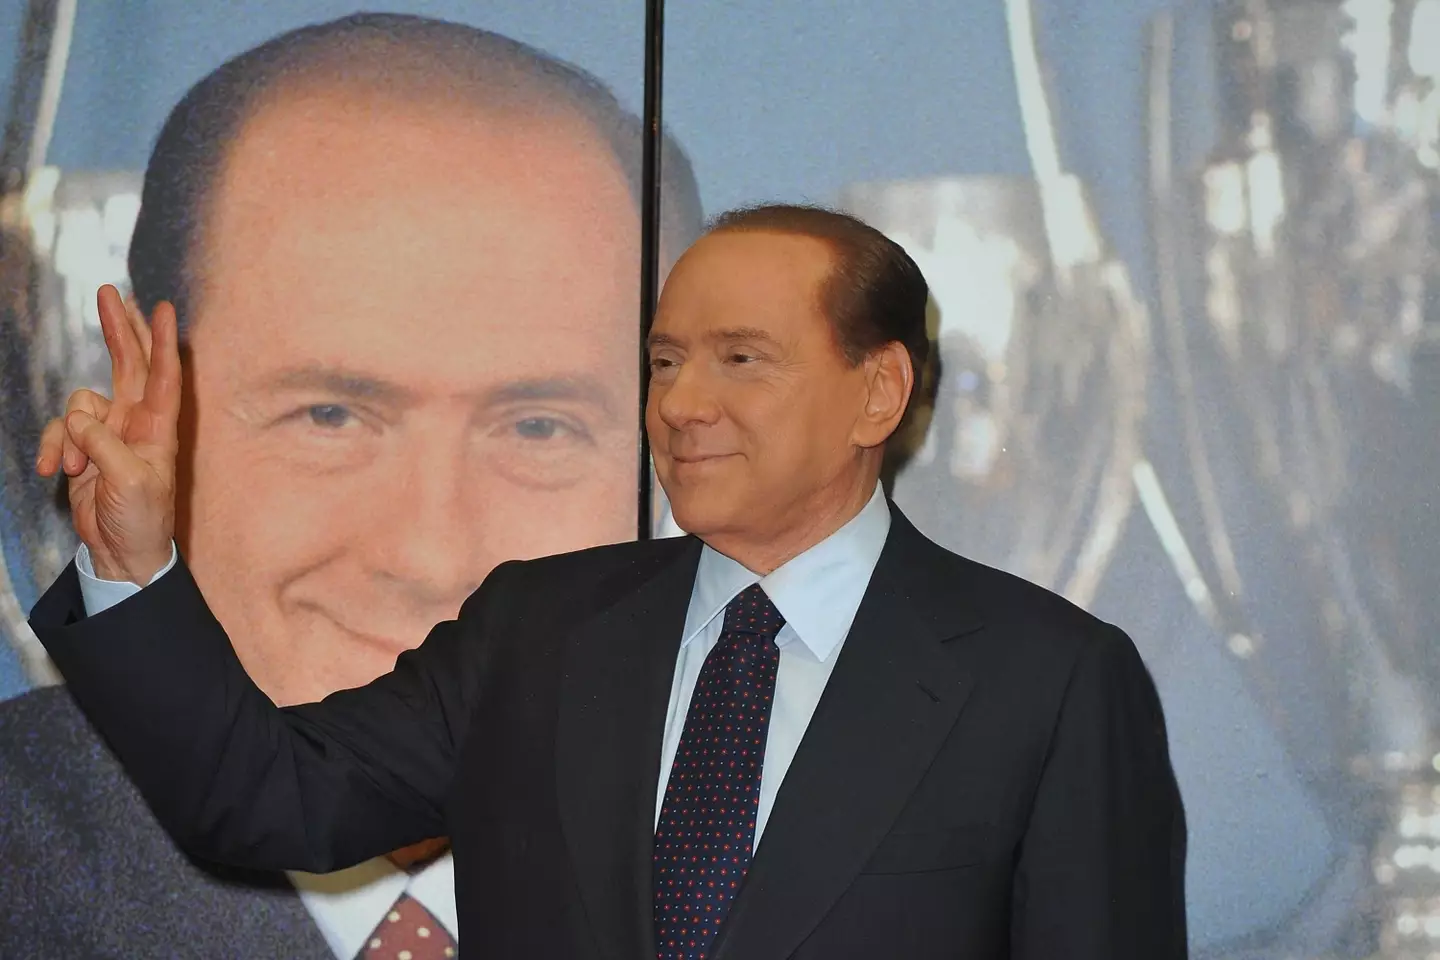 Silvio Berlusconi pictured in 2011 (